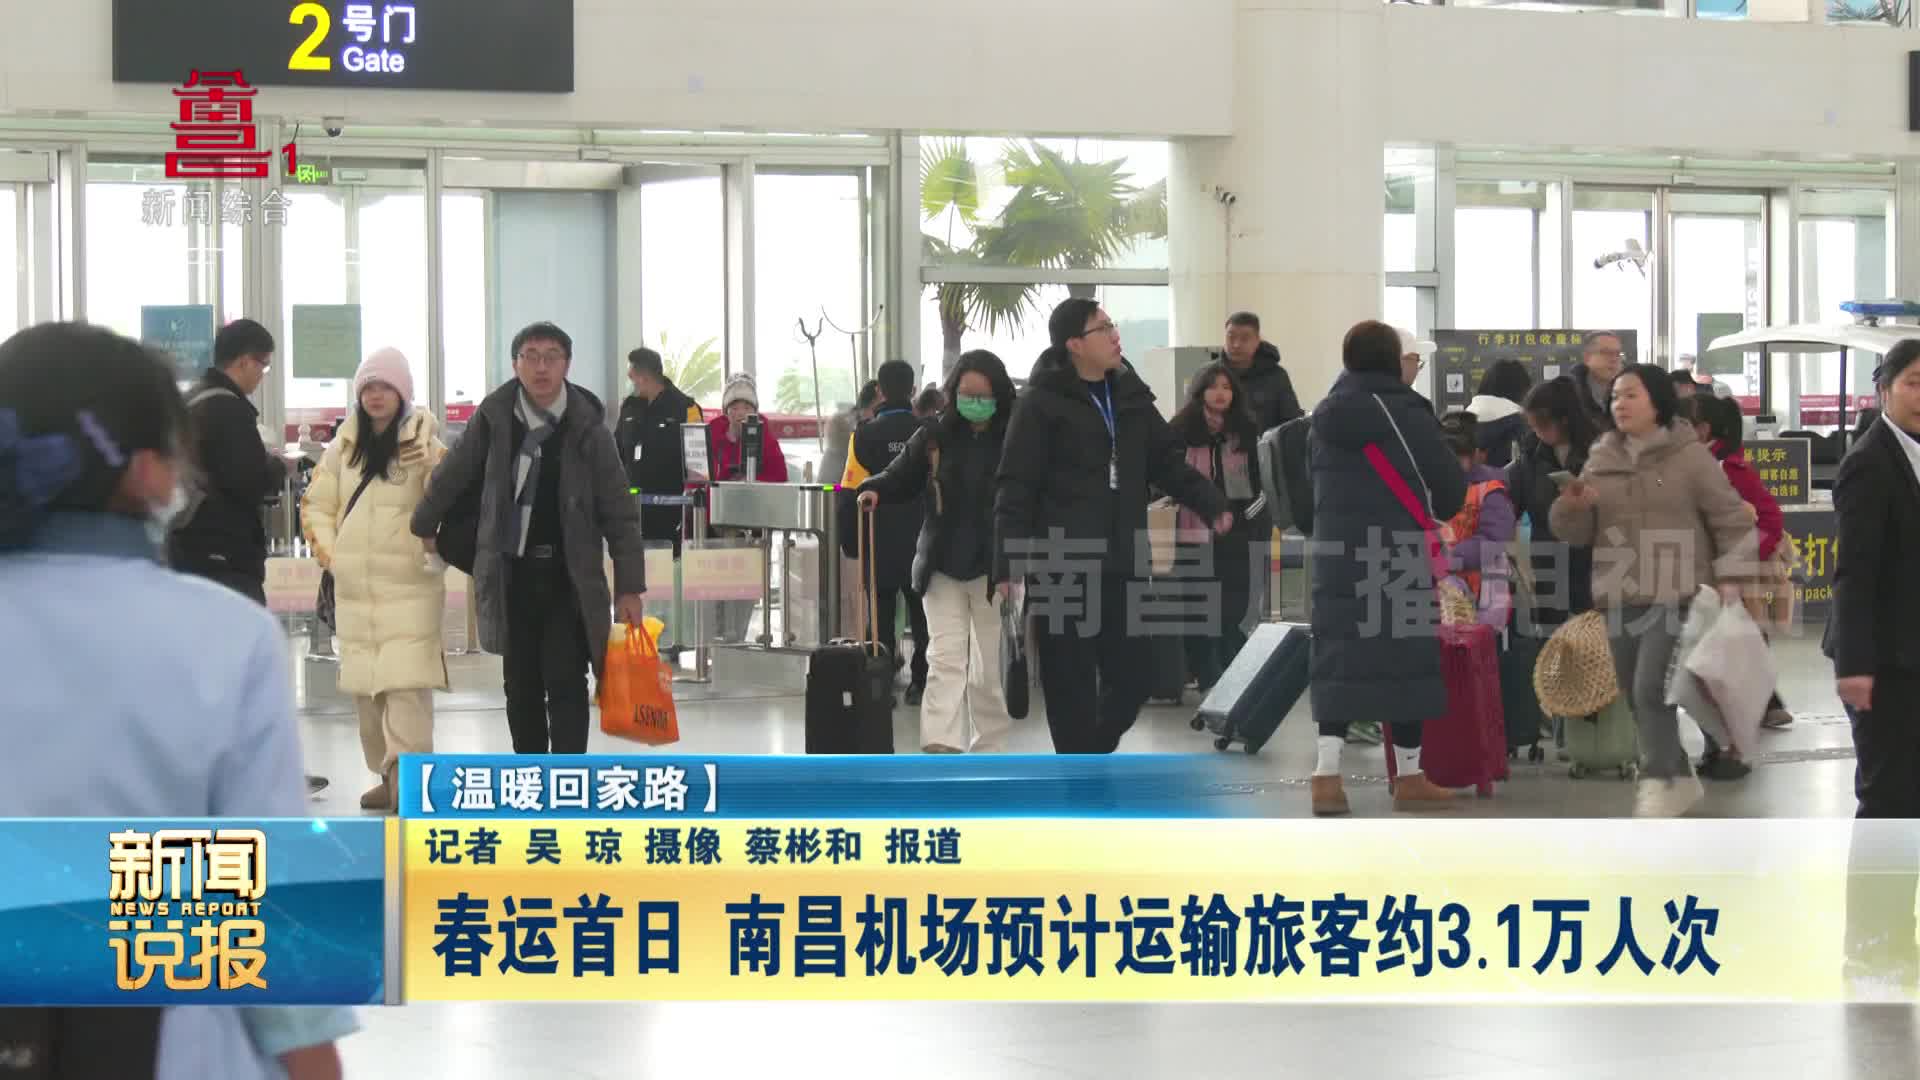 春运首日 南昌机场预计运输旅客约3.1万人次